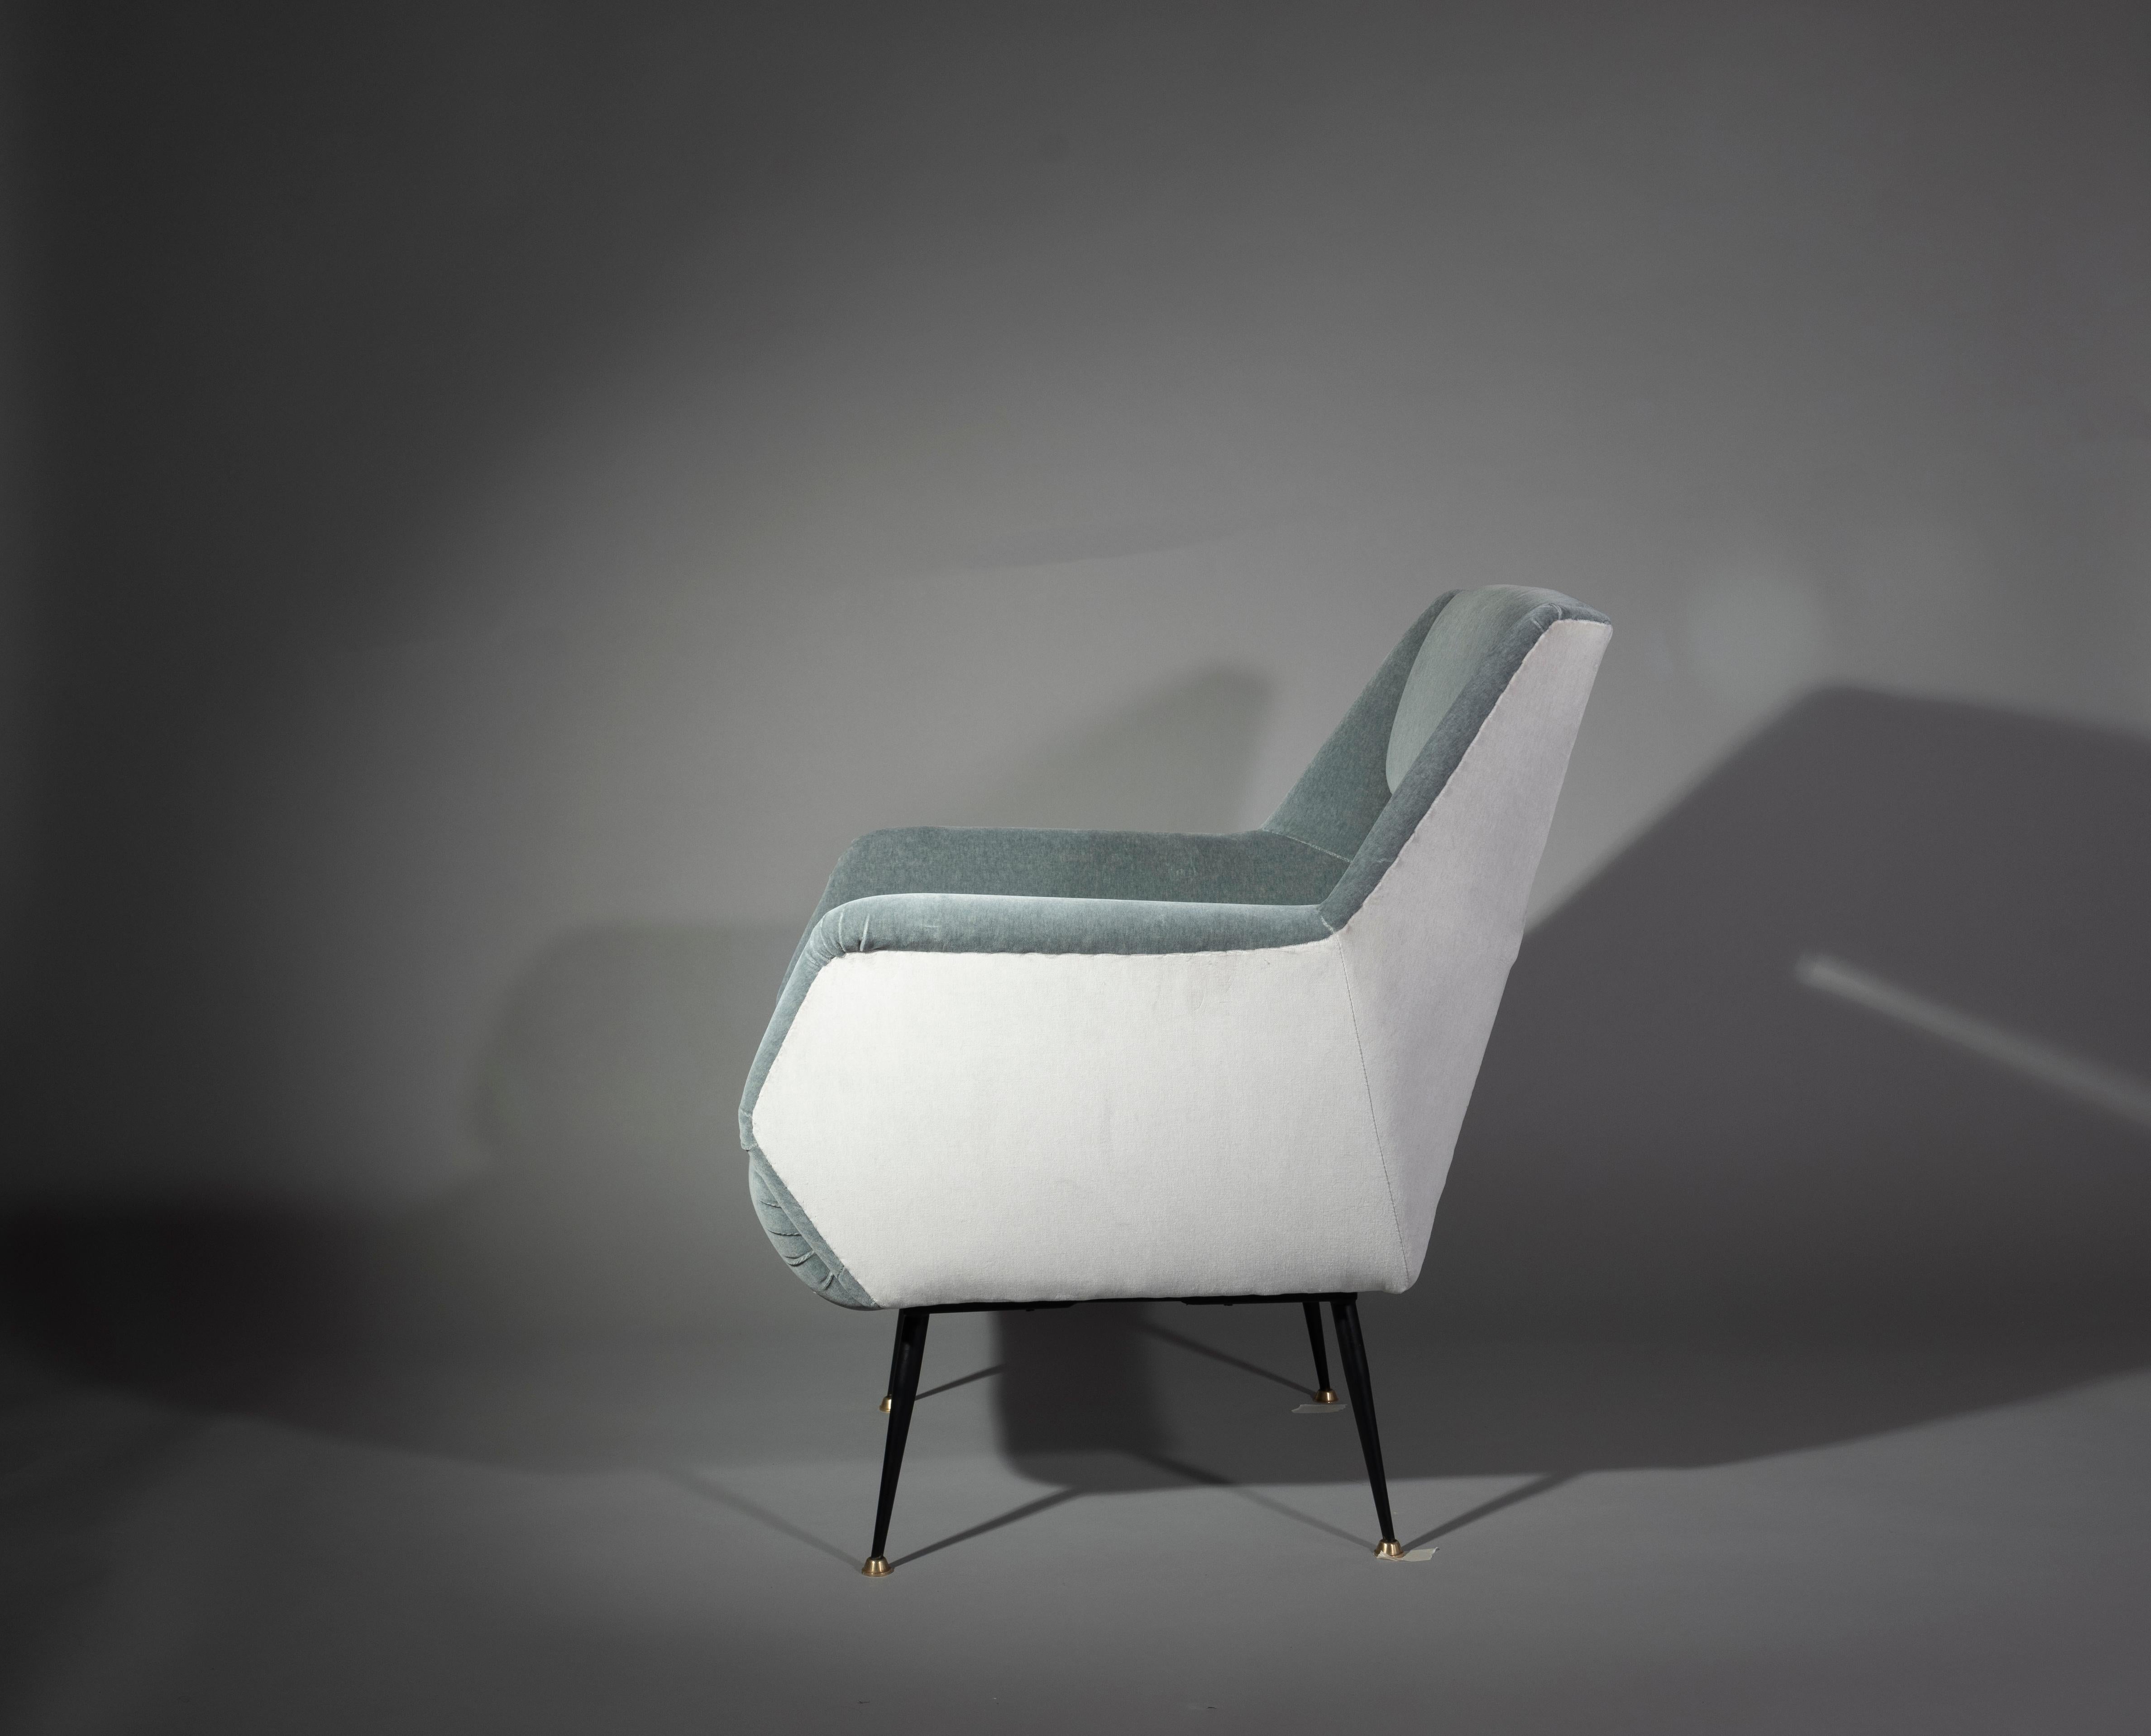 Italian Pair of Lounge Chairs by Gigi Radice for Minotti, Upholstered in Dedar Velvet